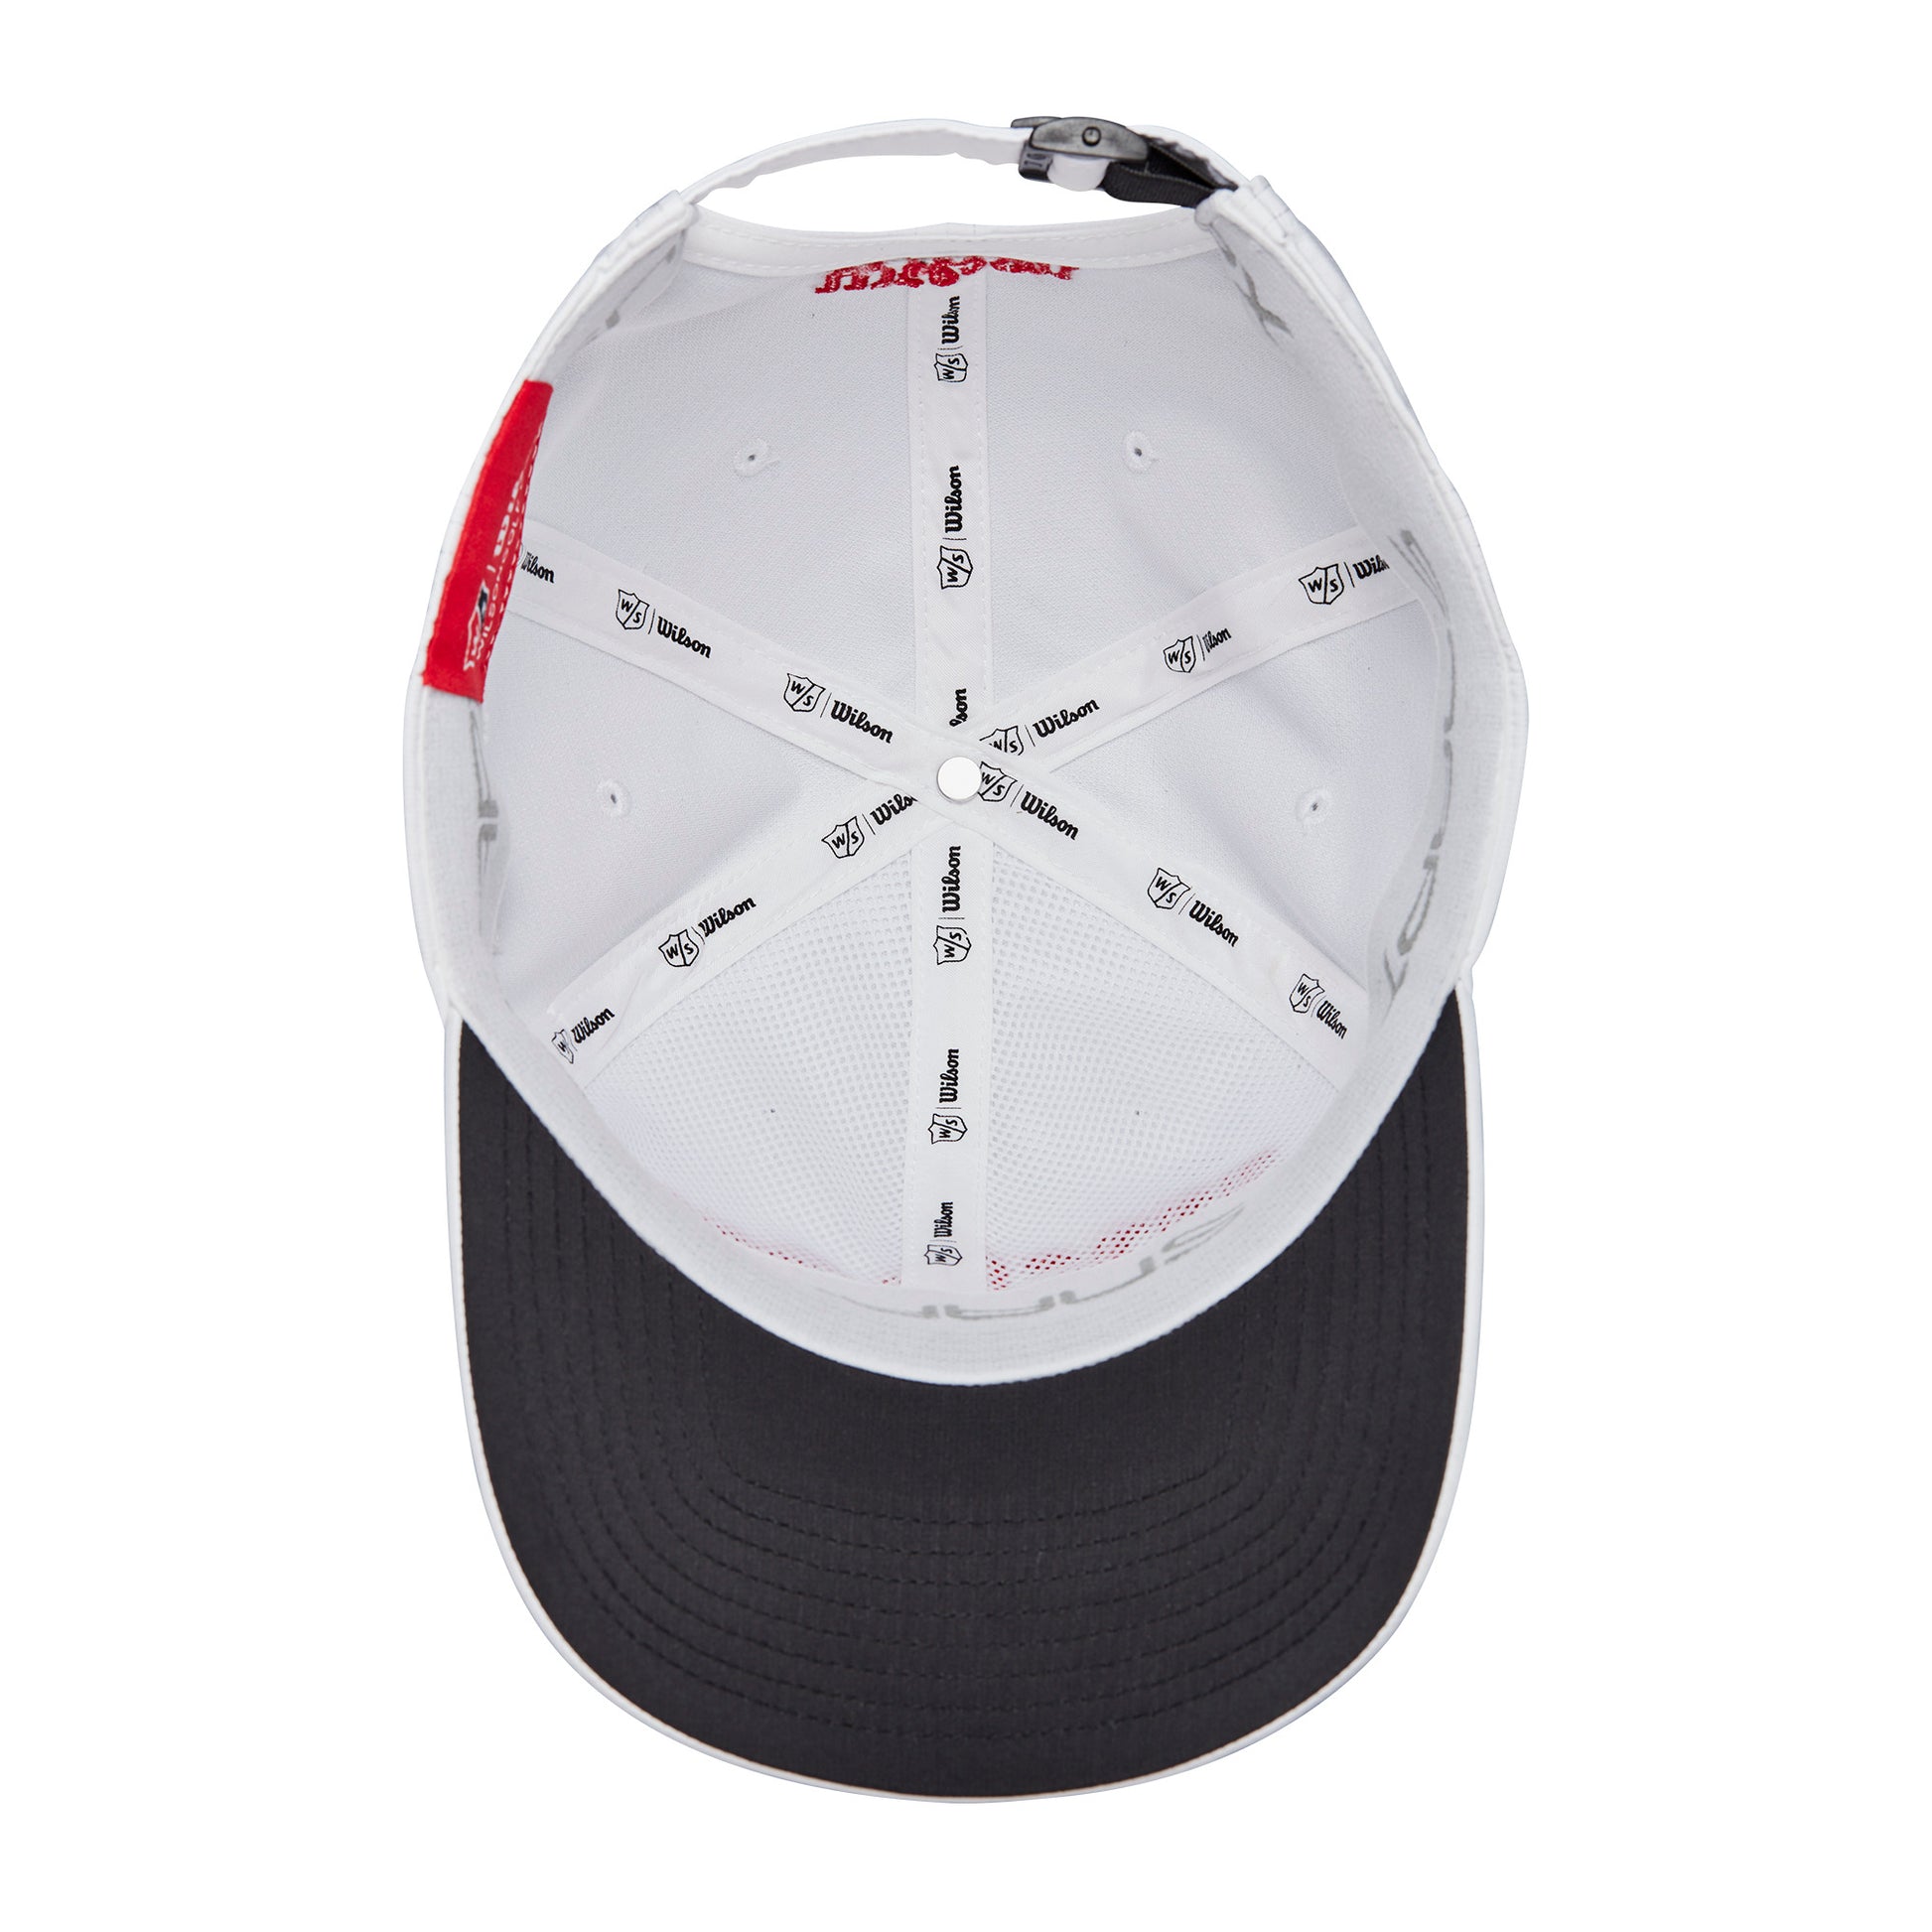 Wilson Wilson Pro Golf Tour Hat, White/Red